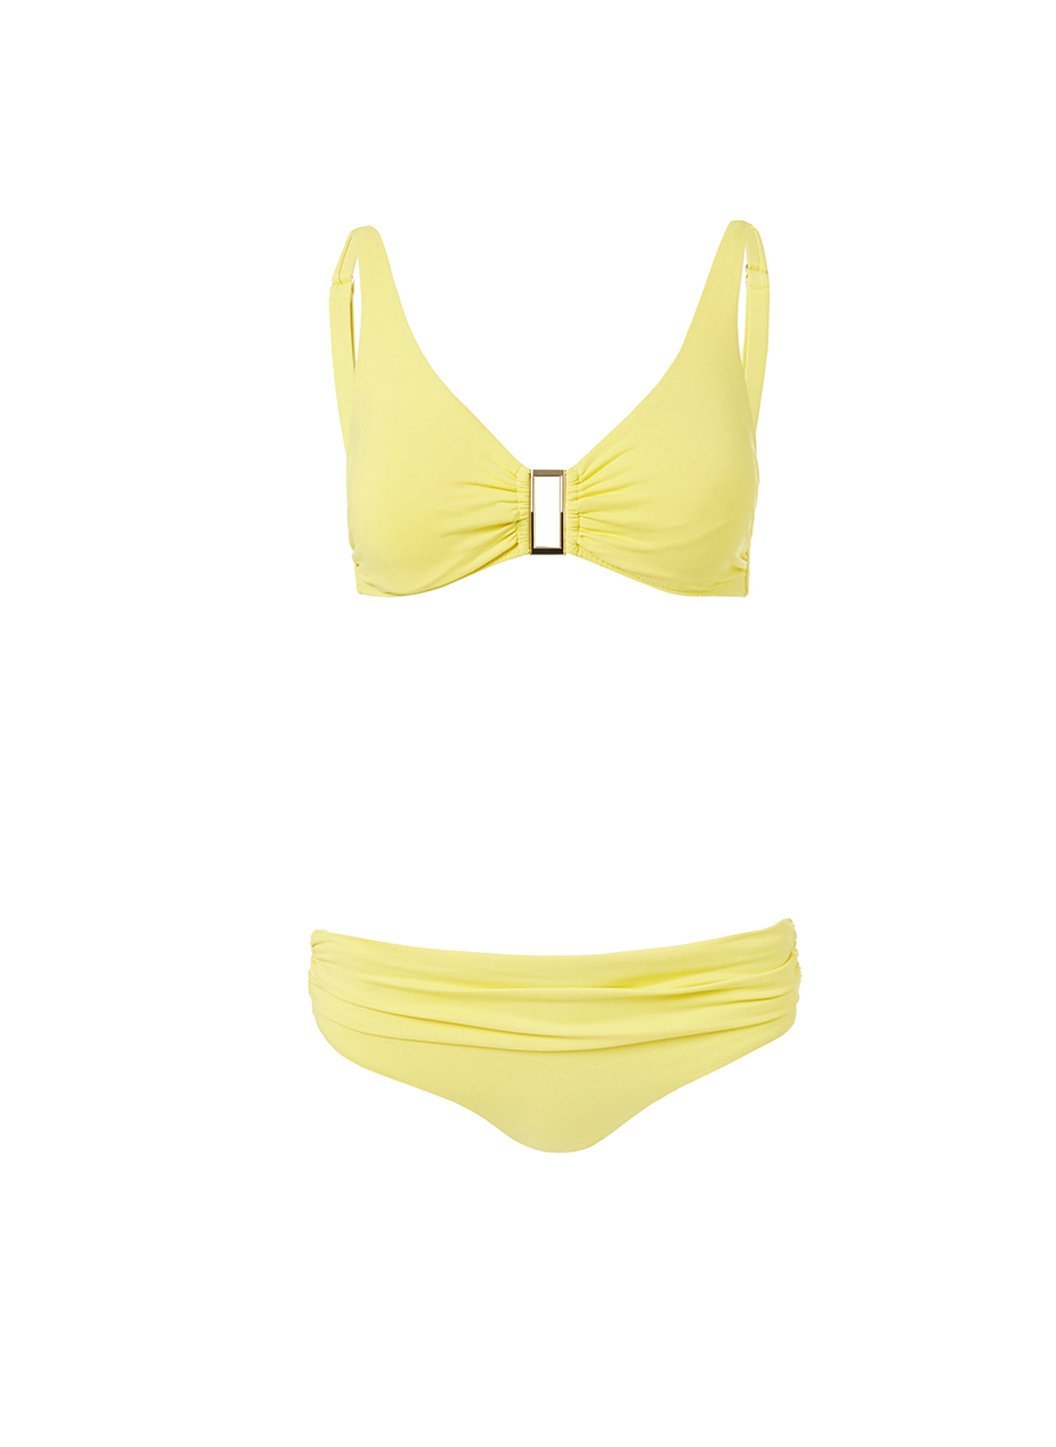 belair yellow overtheshoulder supportive bikini 2019